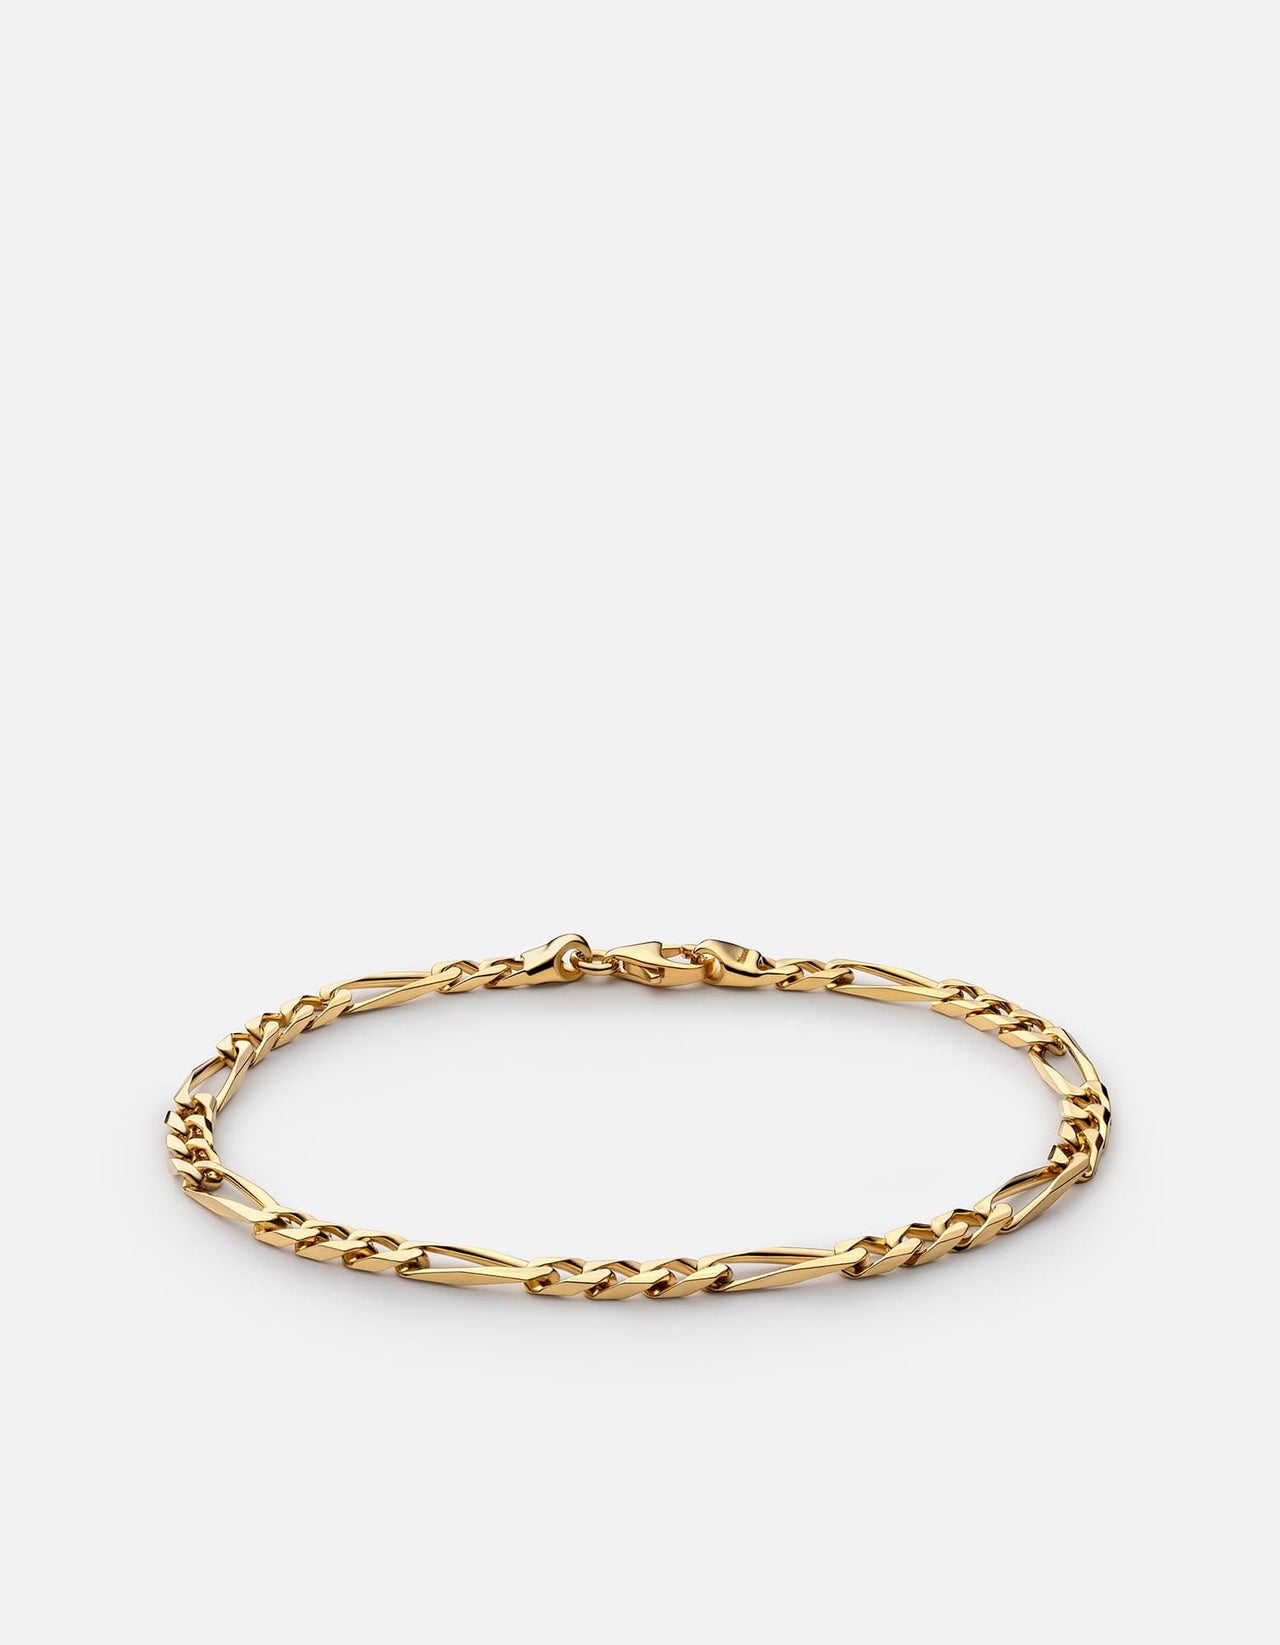 Miansai Men's 3mm Gold Vermeil Chain Necklace